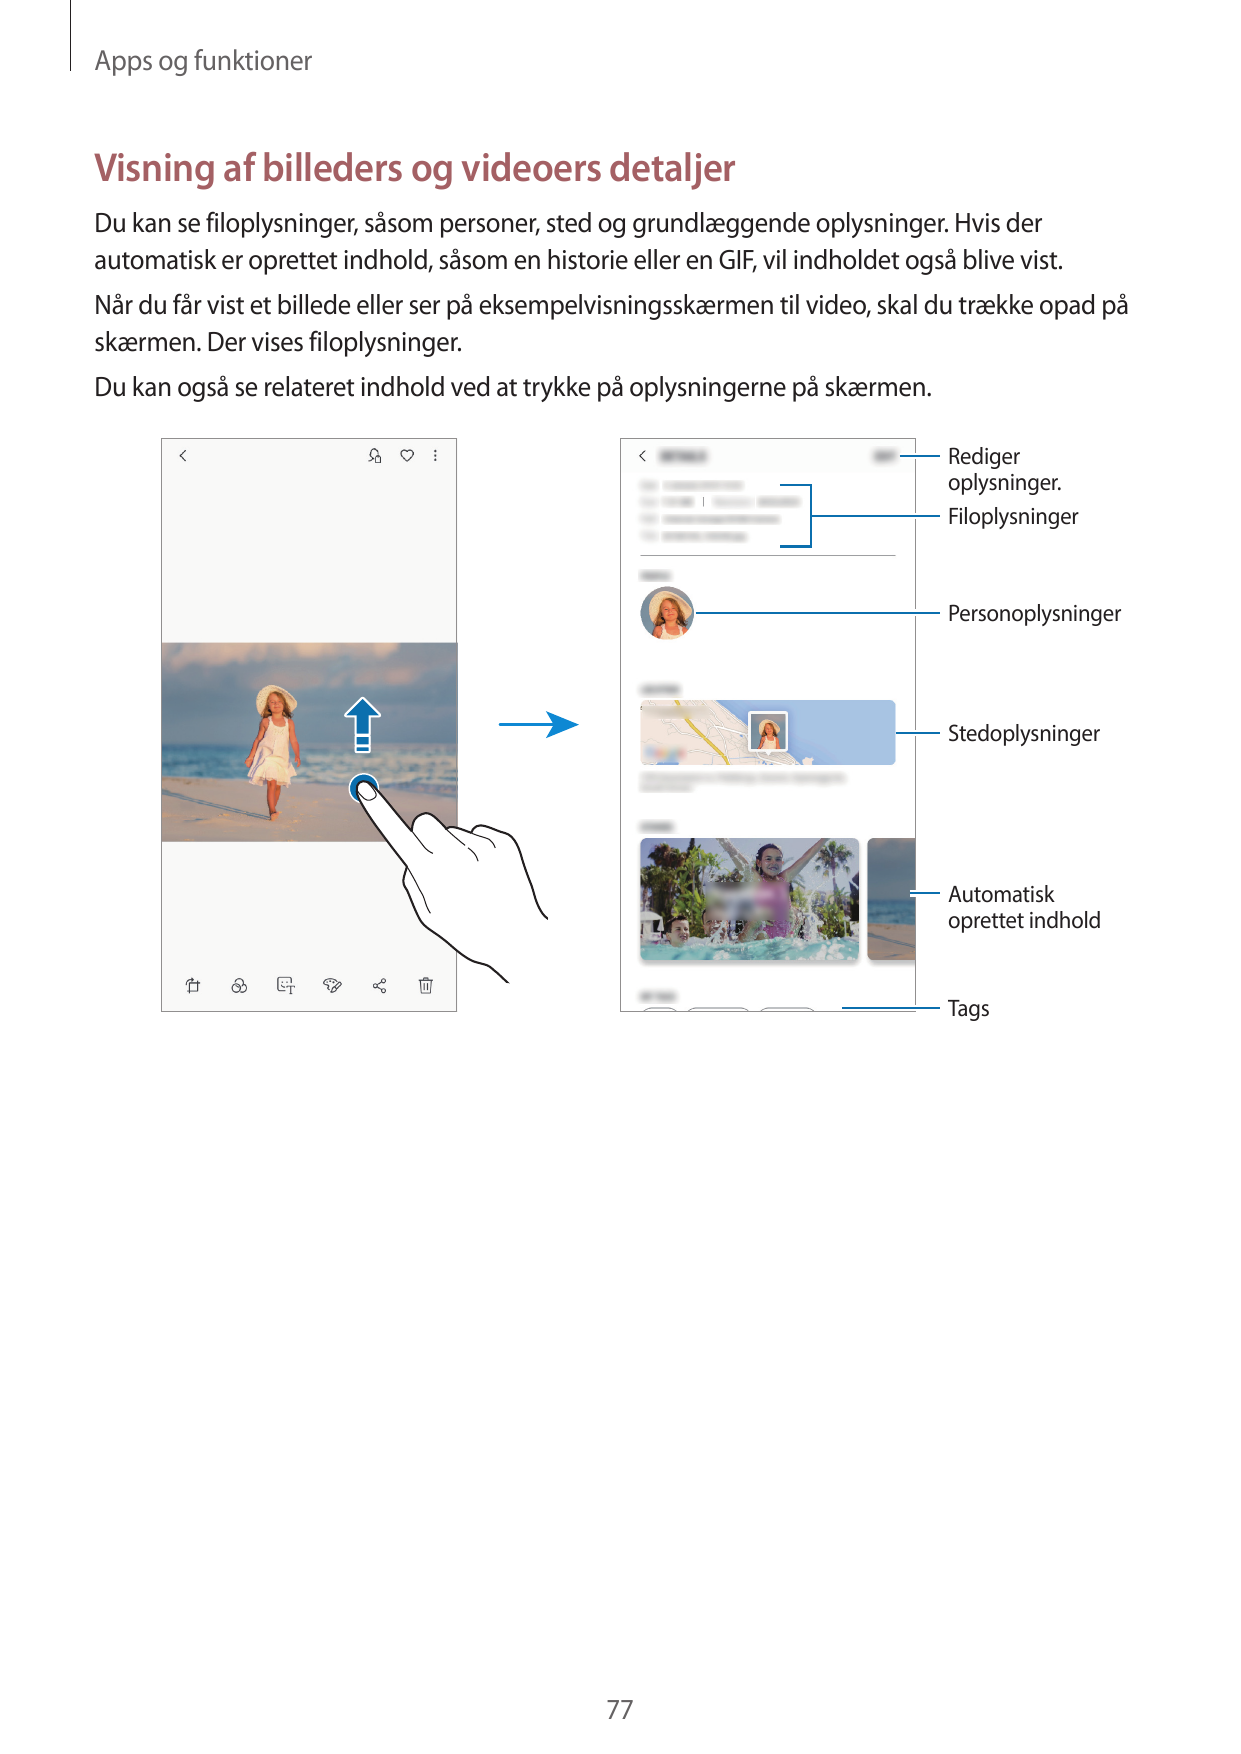 Apps og funktionerVisning af billeders og videoers detaljerDu kan se filoplysninger, såsom personer, sted og grundlæggende oplys